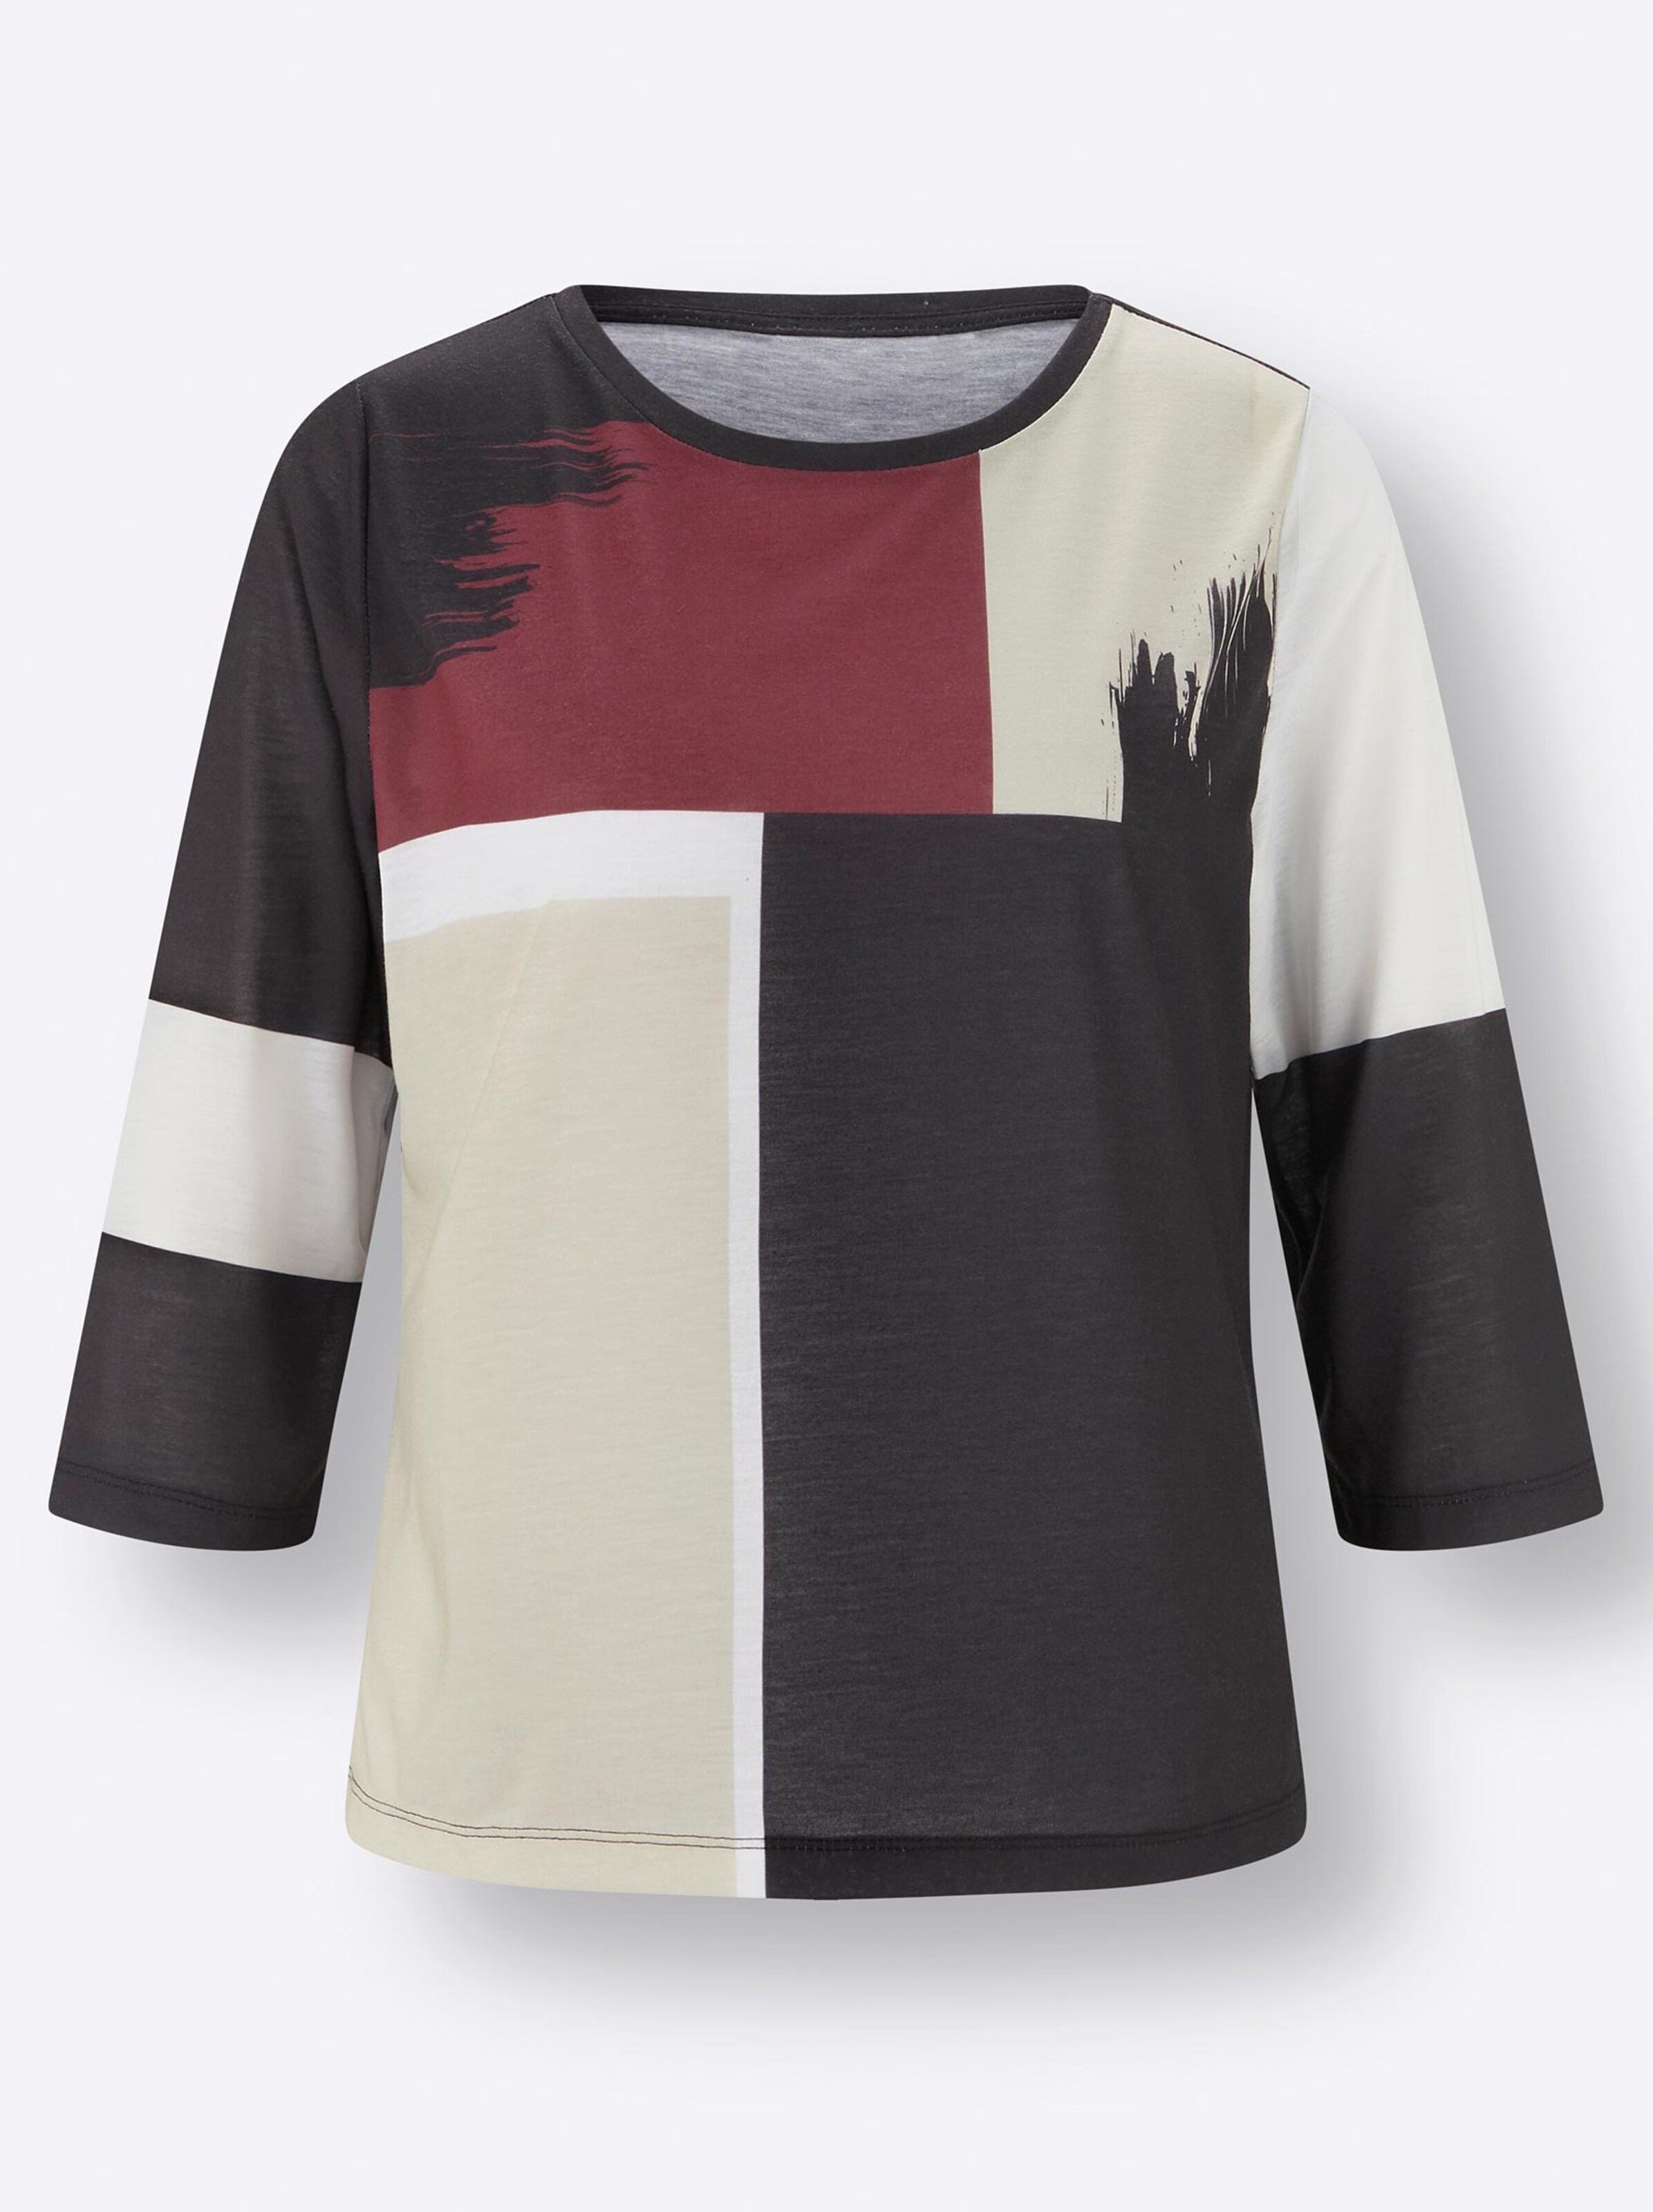 Damenmode Shirts 3/4-Arm-Shirt in schwarz-sand-bedruckt 